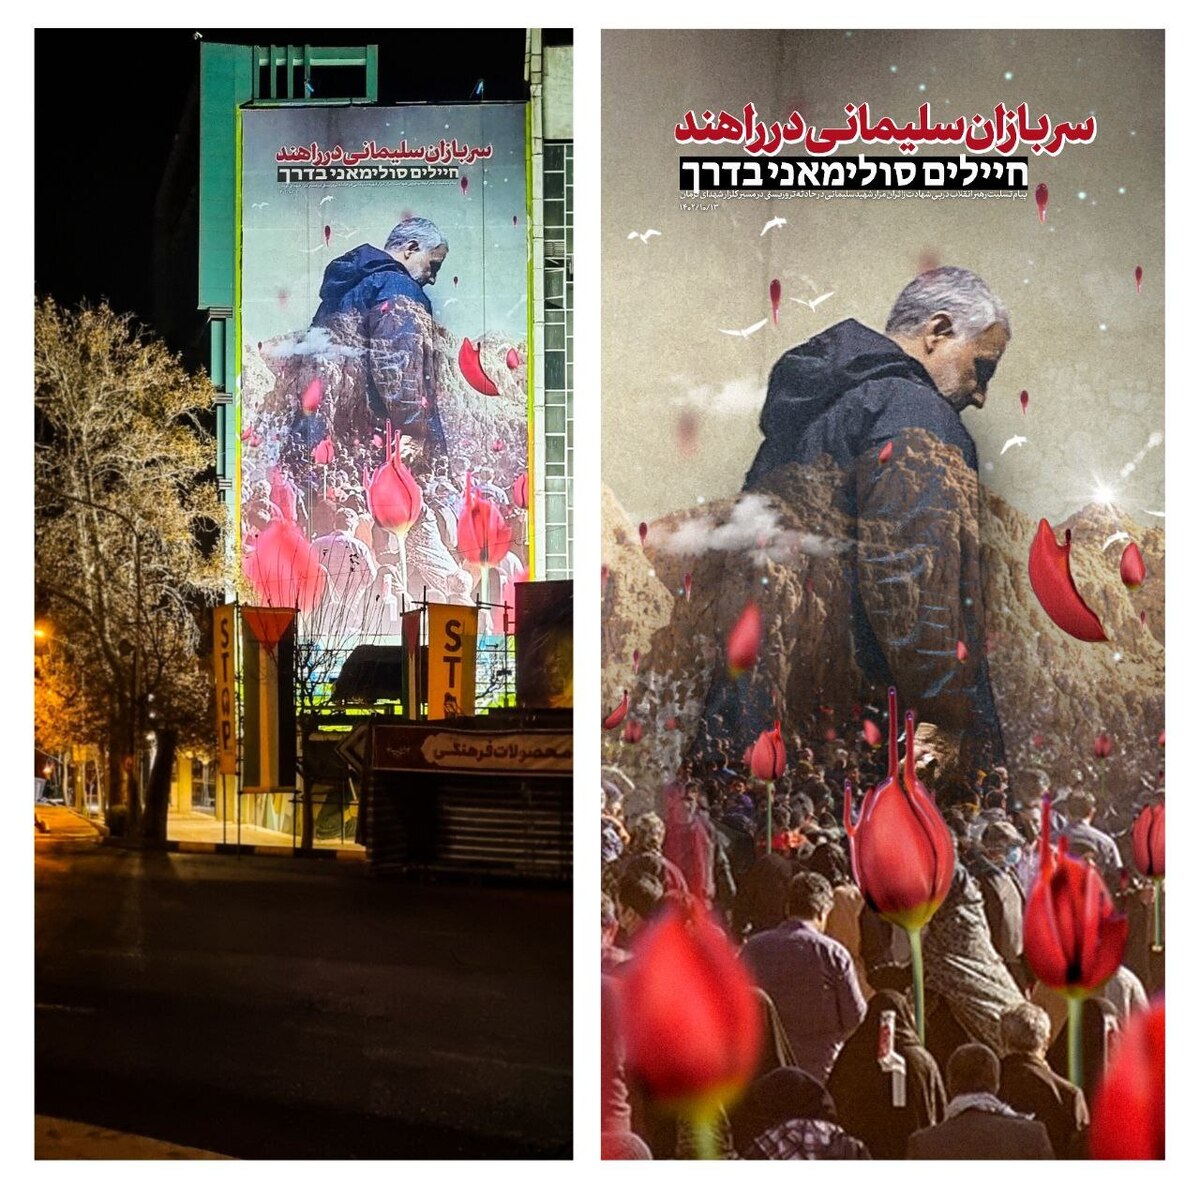 جدیدترین دیوارنگاره میدان فلسطین رونمایی شد/ سربازان سلیمانی در راهند